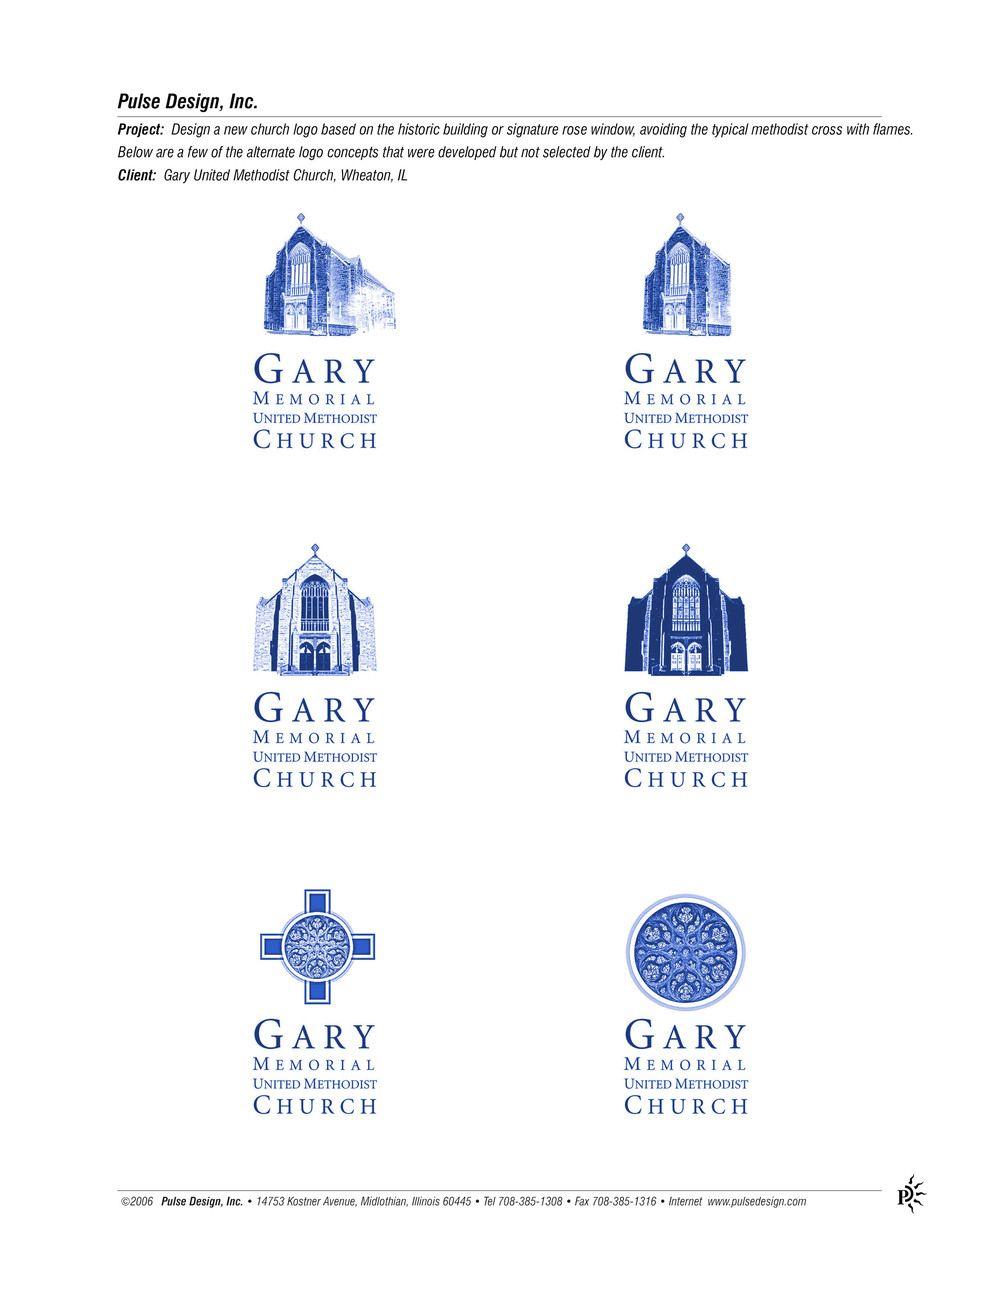 Blue Pulse Logo - Client Gary Church 1